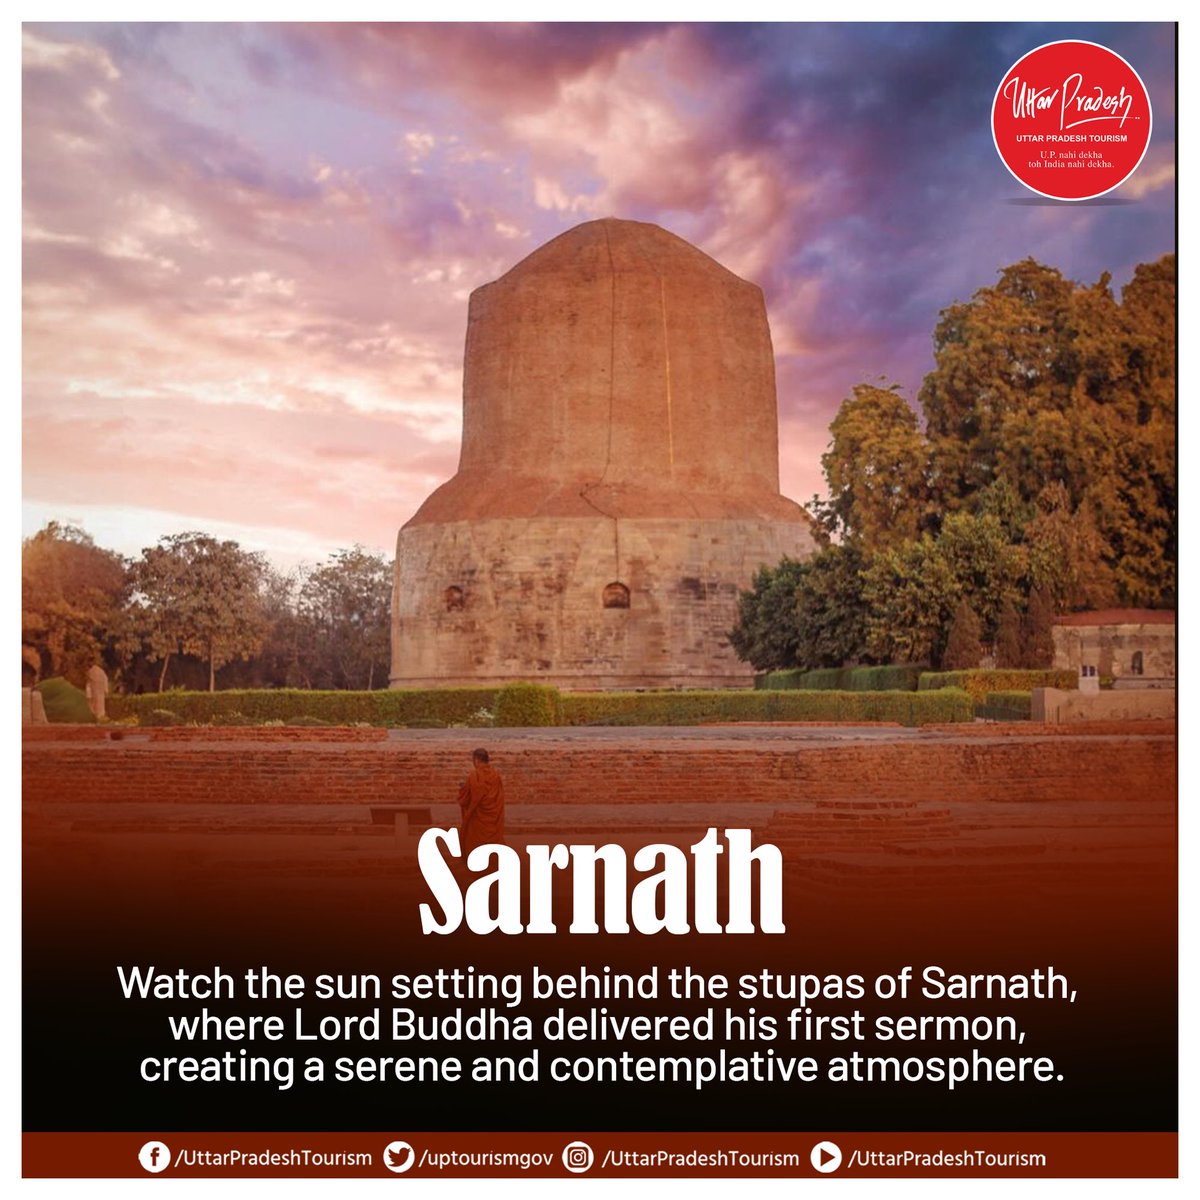 #Ayodhya #Sarnath #GhatsOfVaranasi #TemplesOfIndia #Dharma #Spirituality #UPTourism

@MukeshMeshram